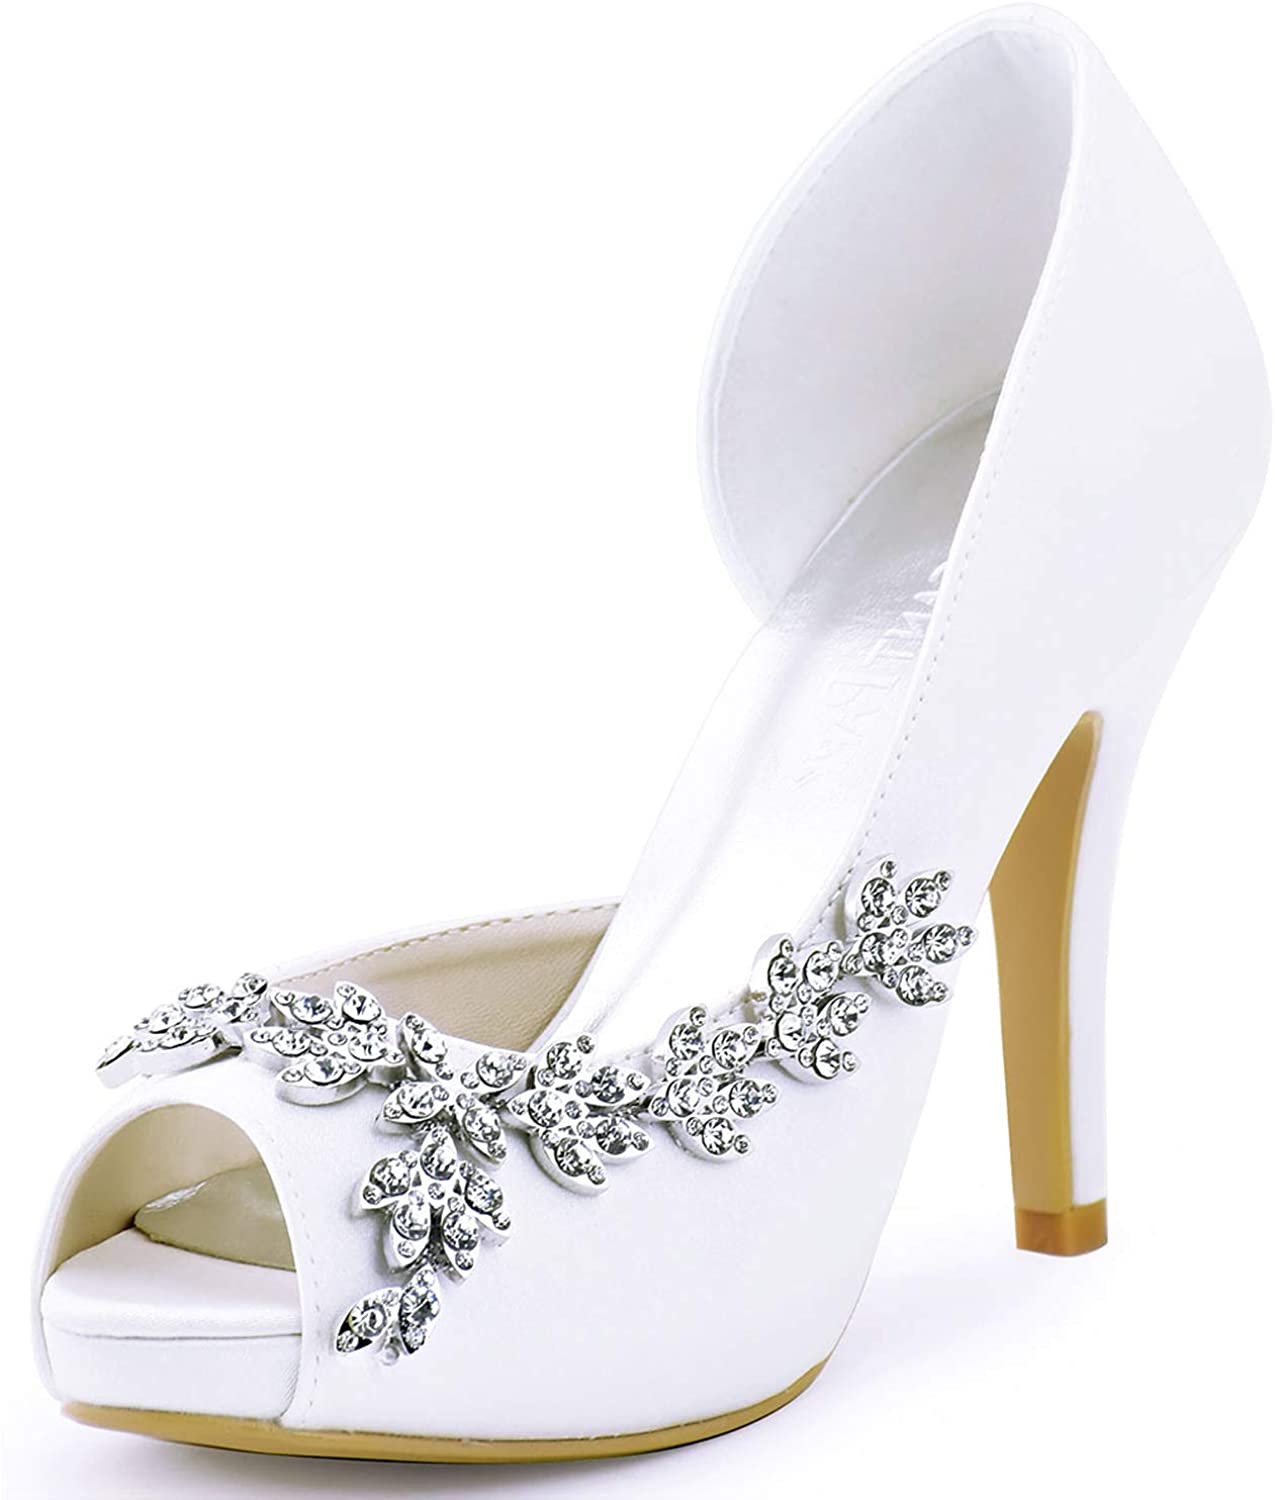 Elegantpark DH Cuadrado Clips de zapatos decorativos Brillantes diamantes de imitación de la boda del partido de noche decoraciones del zapato 